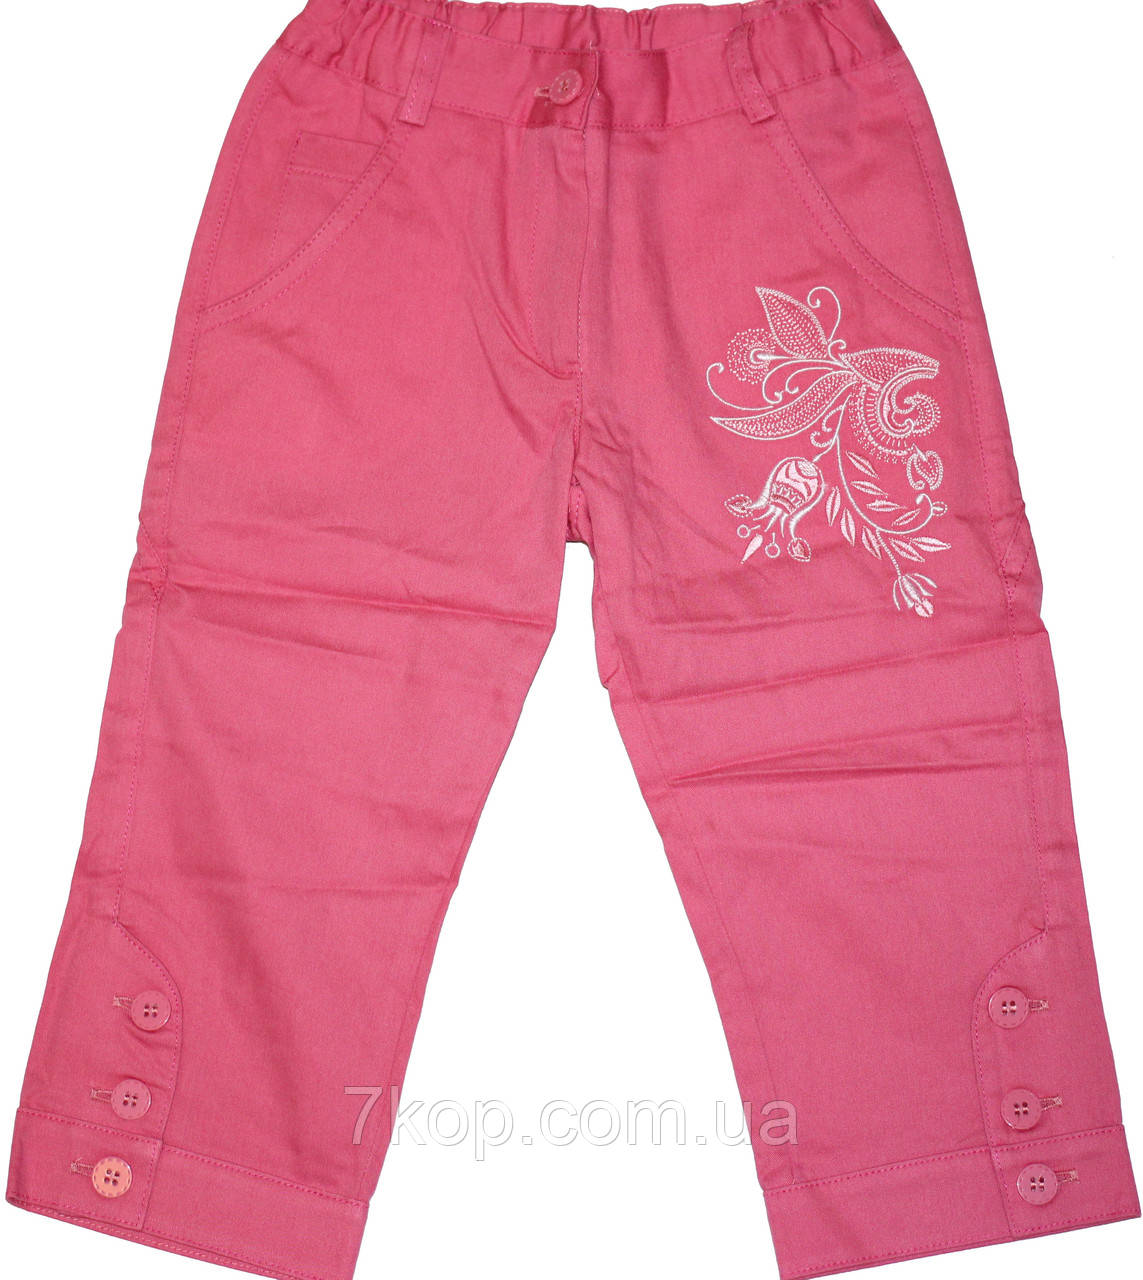 Штани-бриджі рожеві з вишивкою для дівчинки, ріст 122 см, 128 см, Бембі